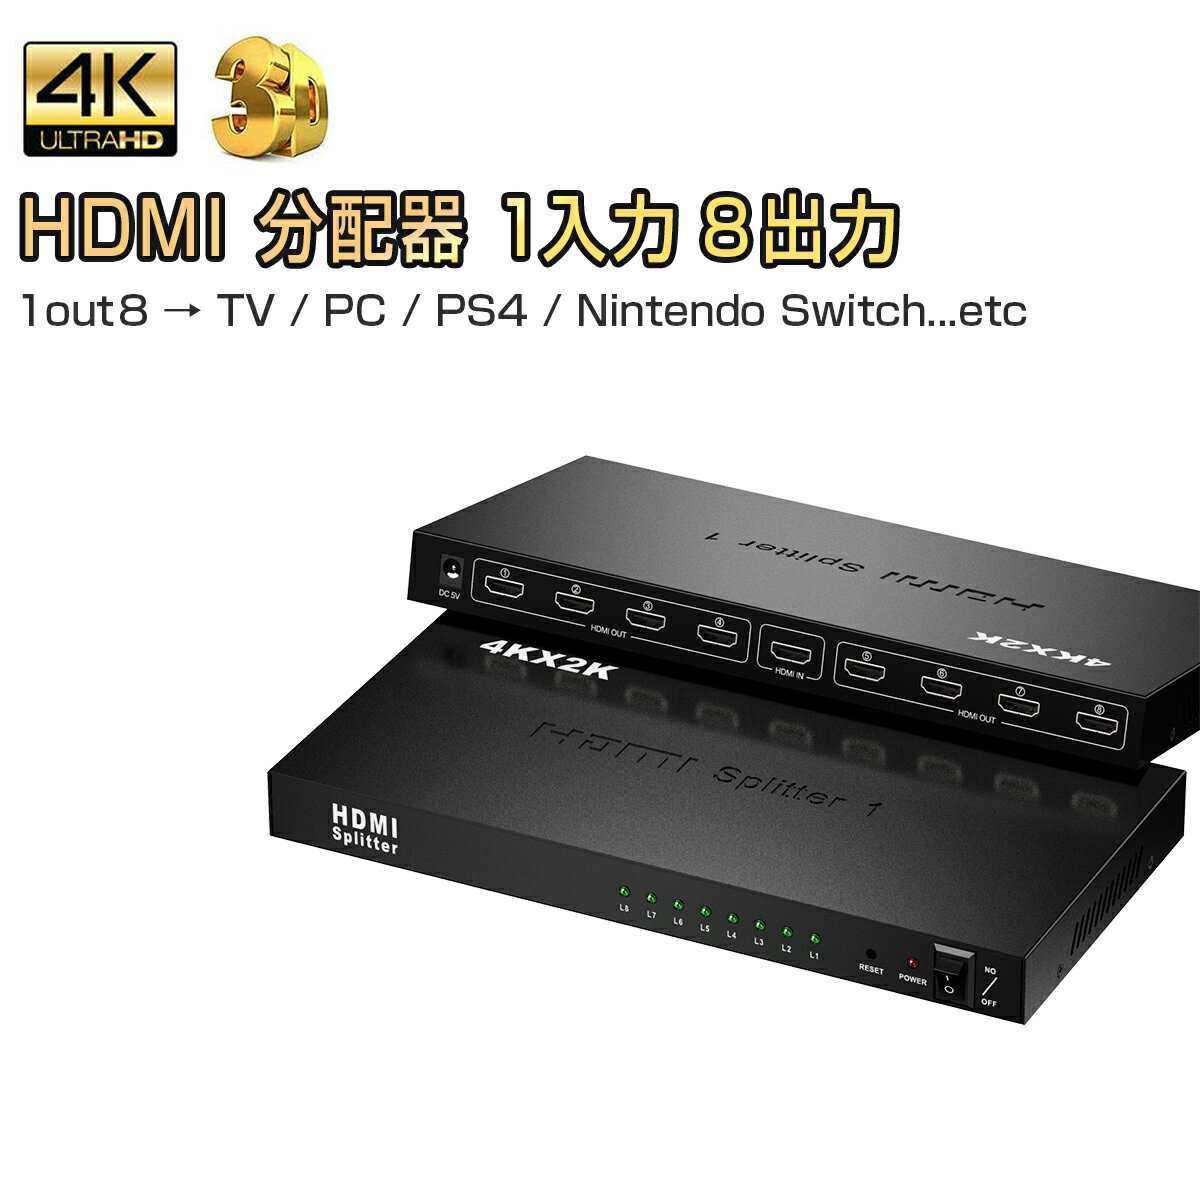 【1入力8出力 / 1out8】HDMIを経由して、1つの入力している映像を8つの画面に出力します。HDMI端子を標準搭載している映像機器、家庭用ゲーム機、PC、PS4、任天堂スイッチ、プロジェクター、Blu-ray、Chromecast、Fire TV Stick、Apple TV等に対応しています。※8入力1出力ではございません。【4K対応】3D/4K/2K対応（解像度：480p、576p、720p、1080i、1080p）家でも複数画面、高画質スーパー3D映画、超クリアなビデオをご堪能いただけます。【安定動作と高い放熱性】マットな質感と心地よい肌触りのデザインかつ、オール金属製の筐体は、安定した動作に、高い放熱性、干渉防止、圧力防止、スクラッチ防止、指紋防止に対応しており、取り扱いがより便利です。【インジケーター表示】前面のインジケーターは、デバイスの動作ステータスとスイッチボタンをリアルタイム表示しますので、視覚的にも分かりやすい設計です。【プラグ＆プレイ】HDMI端子搭載のTVやモニターに繋ぐだけで、8つまでの画面に表示し、すぐに使えます。製品の最適な画質と寿命を得るために、推奨されるHDMIケーブルの長さは10m以下です。【使用用途】学校、会社、工場、店舗、展示会、会議室、教育現場、監視センター、家庭等いろいろな用途で使用できます。【パッケージ内容】本体、電源アダプター、USB-DCケーブル(長さ：約80cm)注意事項・製造ロットにより、予告なく外観・色に変更する場合がございます。・加工、取付ミスの場合は、いかなる理由でも返品・交換は出来ません。・輸入品ですので希にわずかのキズ、箱の破損がありますがご了承ください。【1入力8出力 / 1out8】HDMIを経由して、1つの入力している映像を8つの画面に出力します。HDMI端子を標準搭載している映像機器、家庭用ゲーム機、PC、PS4、任天堂スイッチ、プロジェクター、Blu-ray、Chromecast、Fire TV Stick、Apple TV等に対応しています。※8入力1出力ではございません。【4K対応】3D/4K/2K対応（解像度：480p、576p、720p、1080i、1080p）家でも複数画面、高画質スーパー3D映画、超クリアなビデオをご堪能いただけます。【安定動作と高い放熱性】マットな質感と心地よい肌触りのデザインかつ、オール金属製の筐体は、安定した動作に、高い放熱性、干渉防止、圧力防止、スクラッチ防止、指紋防止に対応しており、取り扱いがより便利です。【インジケーター表示】前面のインジケーターは、デバイスの動作ステータスとスイッチボタンをリアルタイム表示しますので、視覚的にも分かりやすい設計です。【プラグ＆プレイ】HDMI端子搭載のTVやモニターに繋ぐだけで、8つまでの画面に表示し、すぐに使えます。製品の最適な画質と寿命を得るために、推奨されるHDMIケーブルの長さは10m以下です。【使用用途】学校、会社、工場、店舗、展示会、会議室、教育現場、監視センター、家庭等いろいろな用途で使用できます。【パッケージ内容】本体、電源アダプター、USB-DCケーブル(長さ：約80cm)注意事項・製造ロットにより、予告なく外観・色に変更する場合がございます。・加工、取付ミスの場合は、いかなる理由でも返品・交換は出来ません。・輸入品ですので希にわずかのキズ、箱の破損がありますがご了承ください。